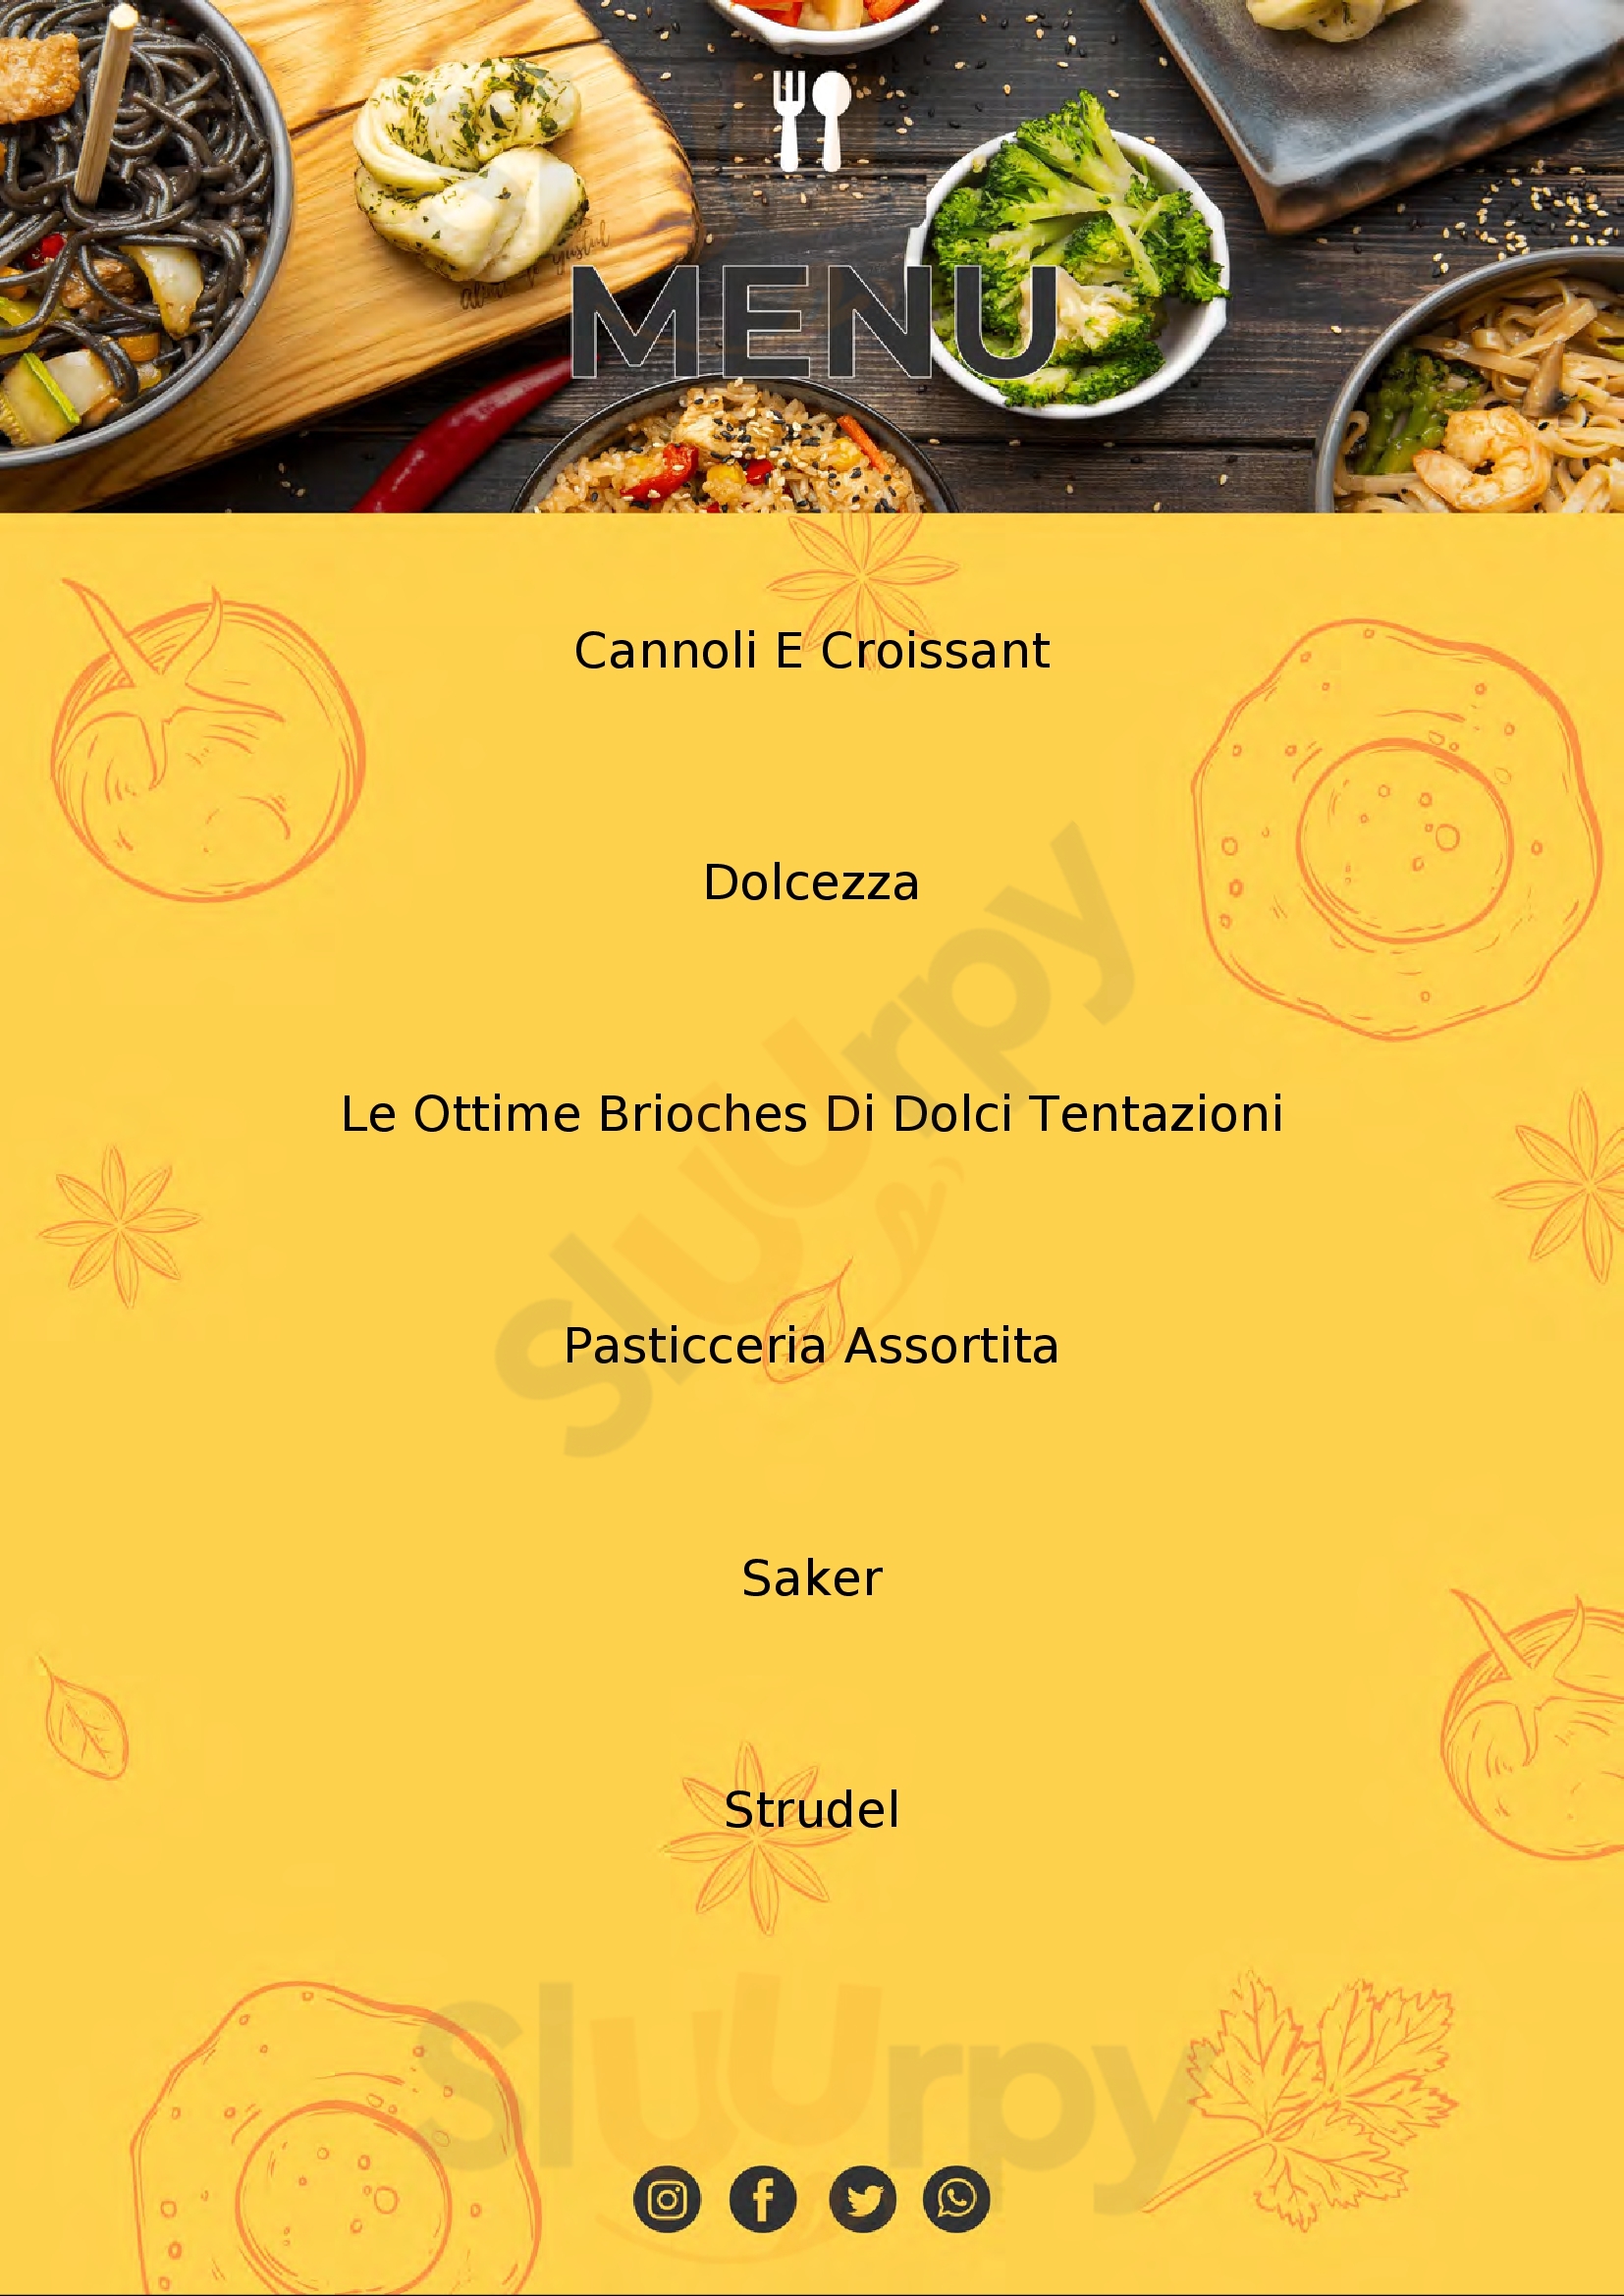 Pasticceria Dolci Tentazioni - Pasticceria, Caffetteria, Bakery Torino menù 1 pagina